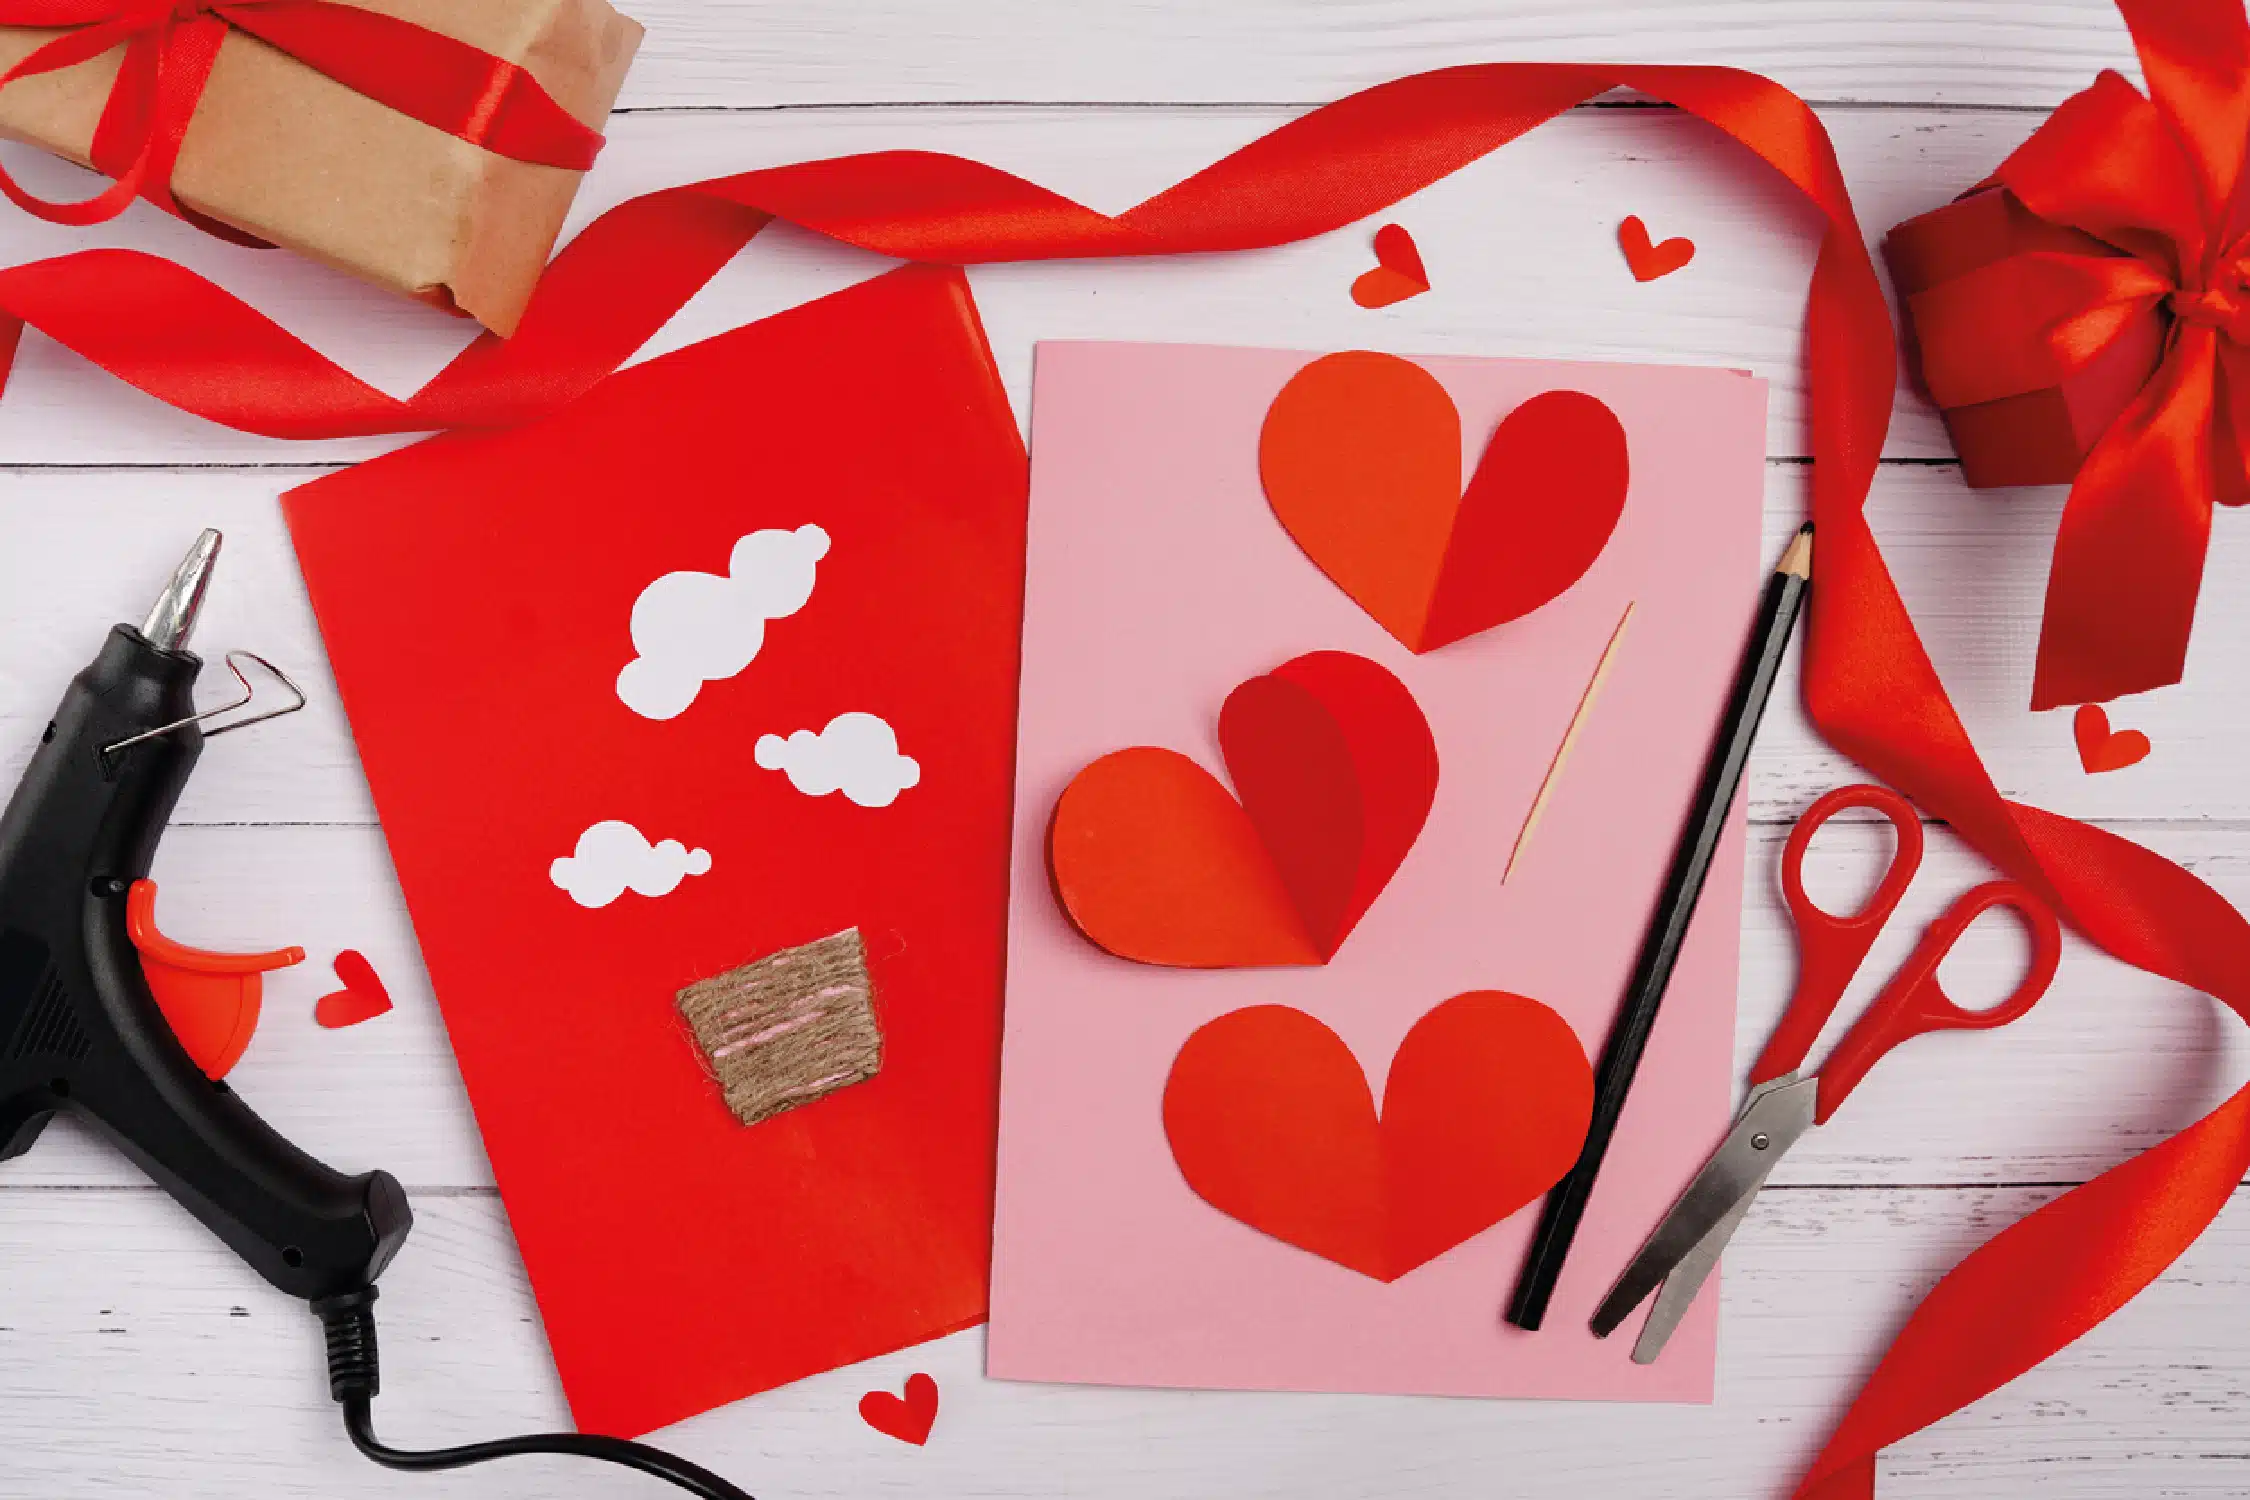 Estas sencillas manualidades para San Valentín para todos, desde mantas pintadas hasta plantas con mensajes. ¡Entra y haz tu favorito!